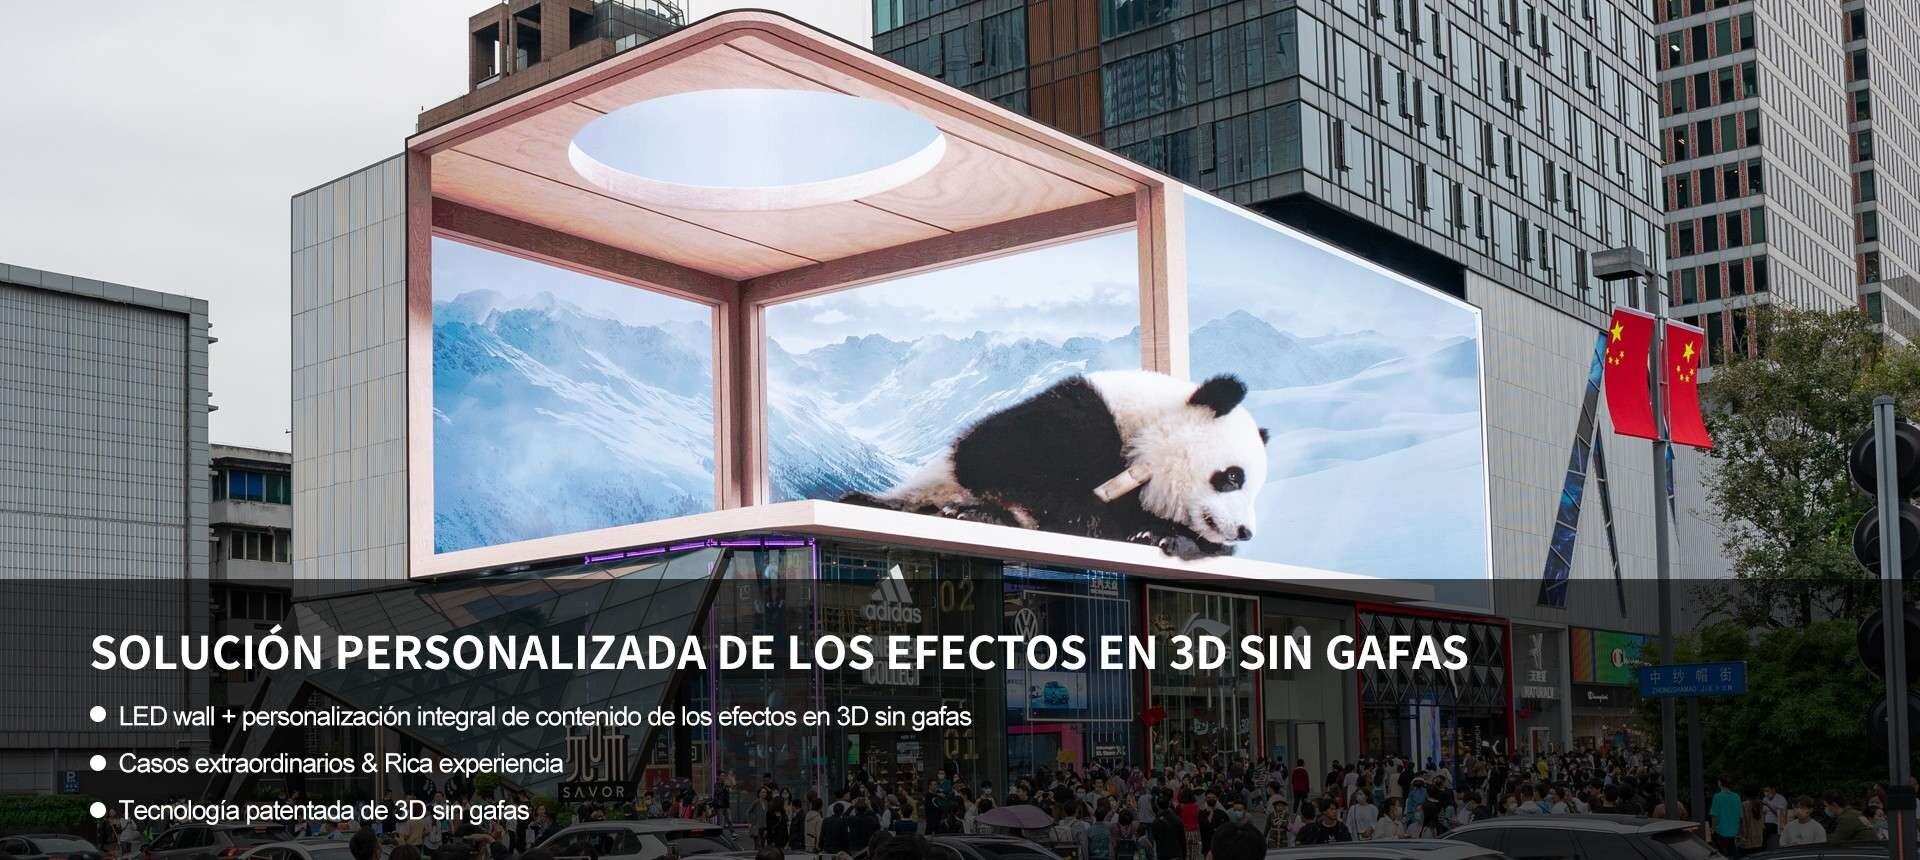 Pantalla LED 3D libre de vidrien Chengdu